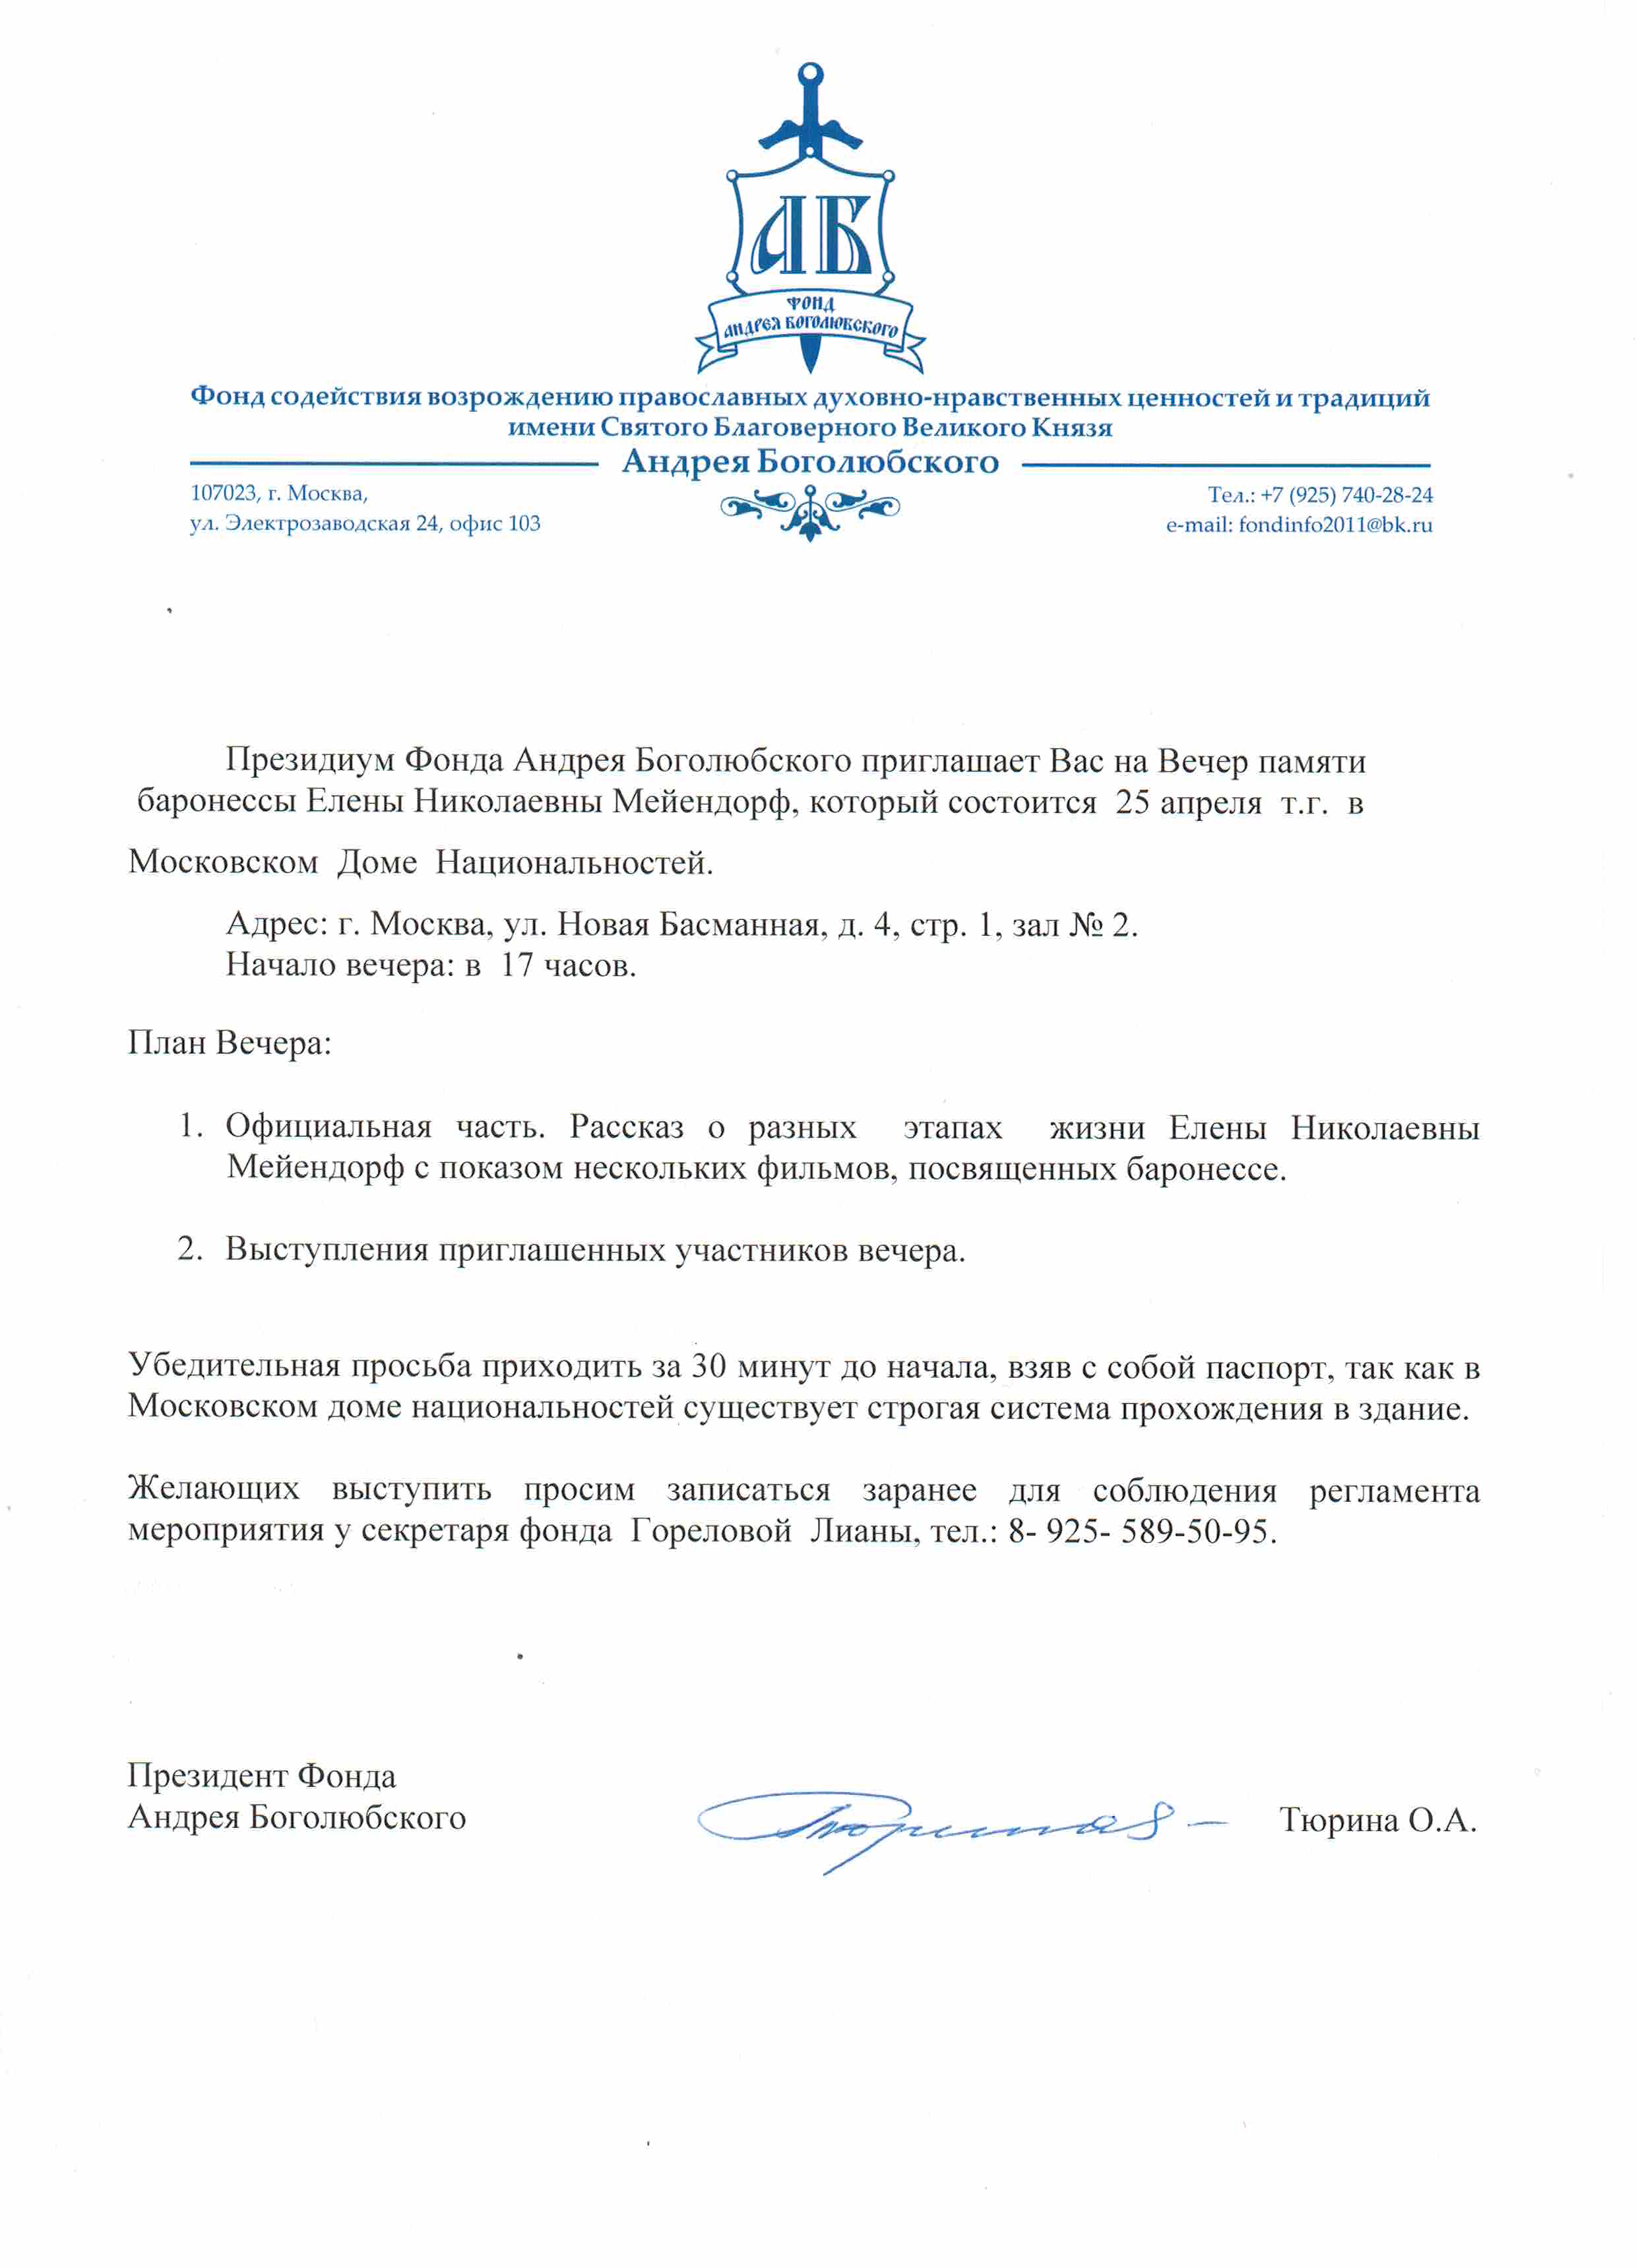 Приглашение на Вечер памяти баронессы Елены Николаевны Мейендорф